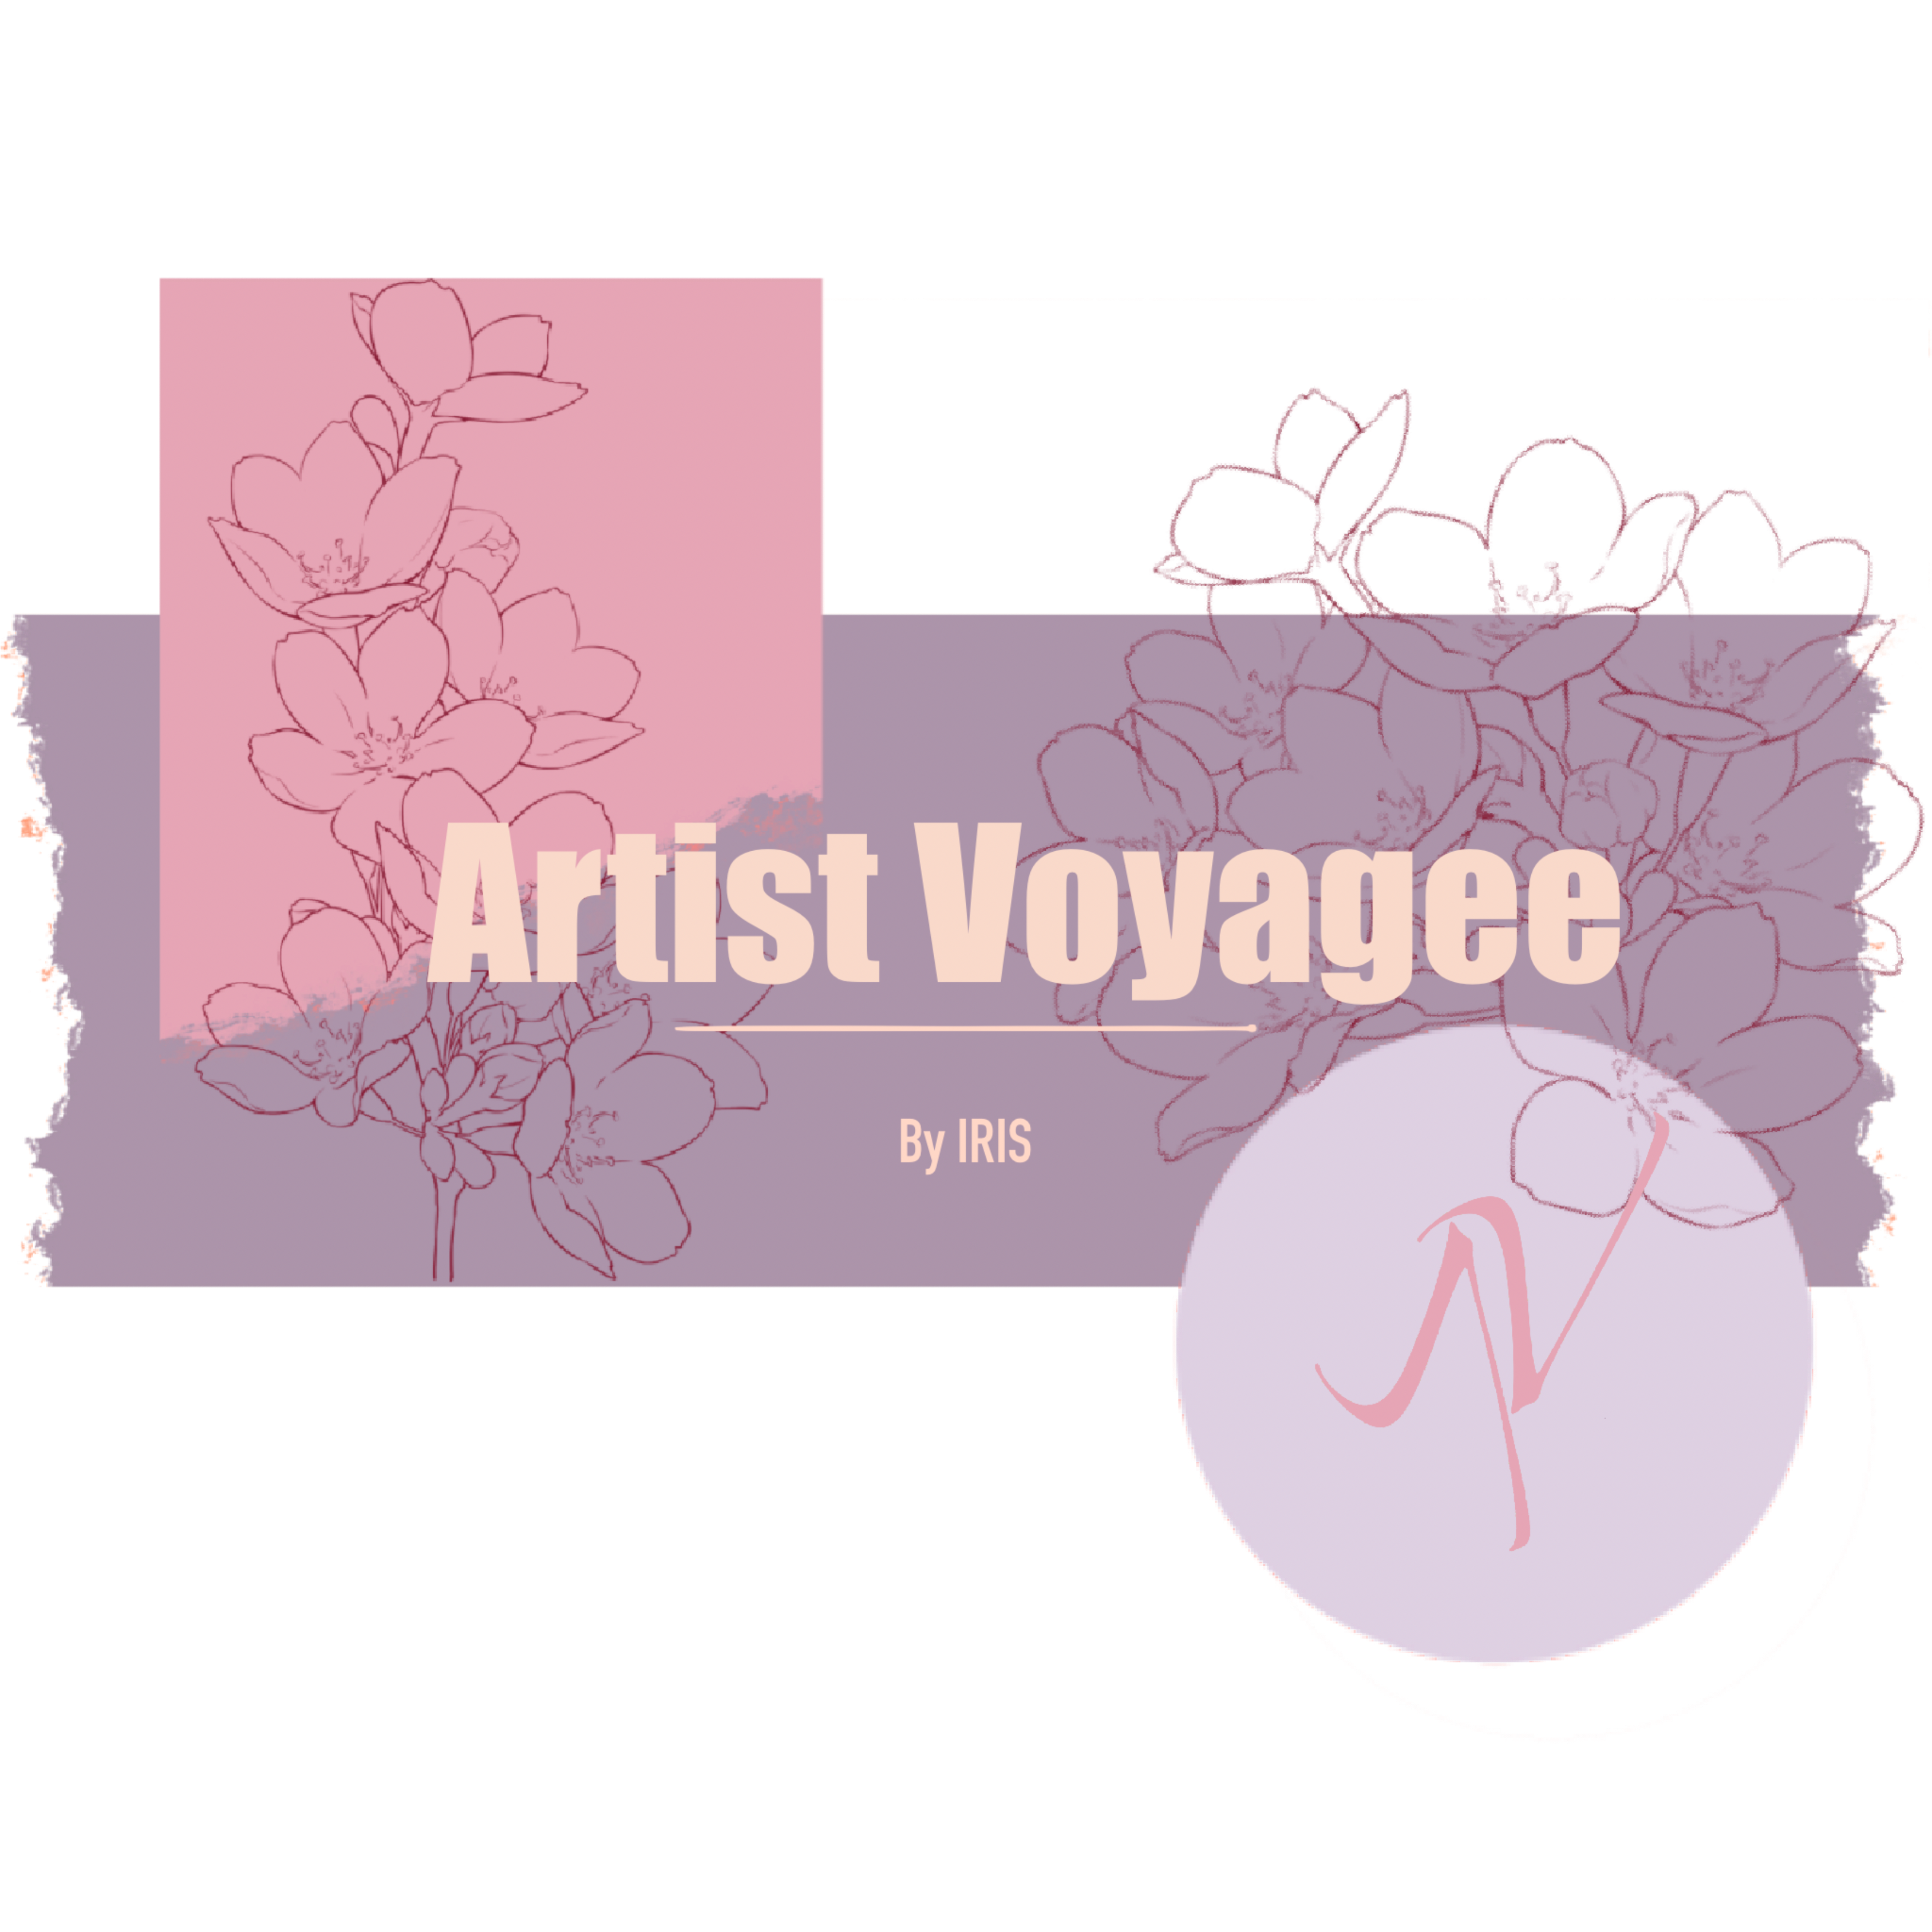 Artist Voyagee